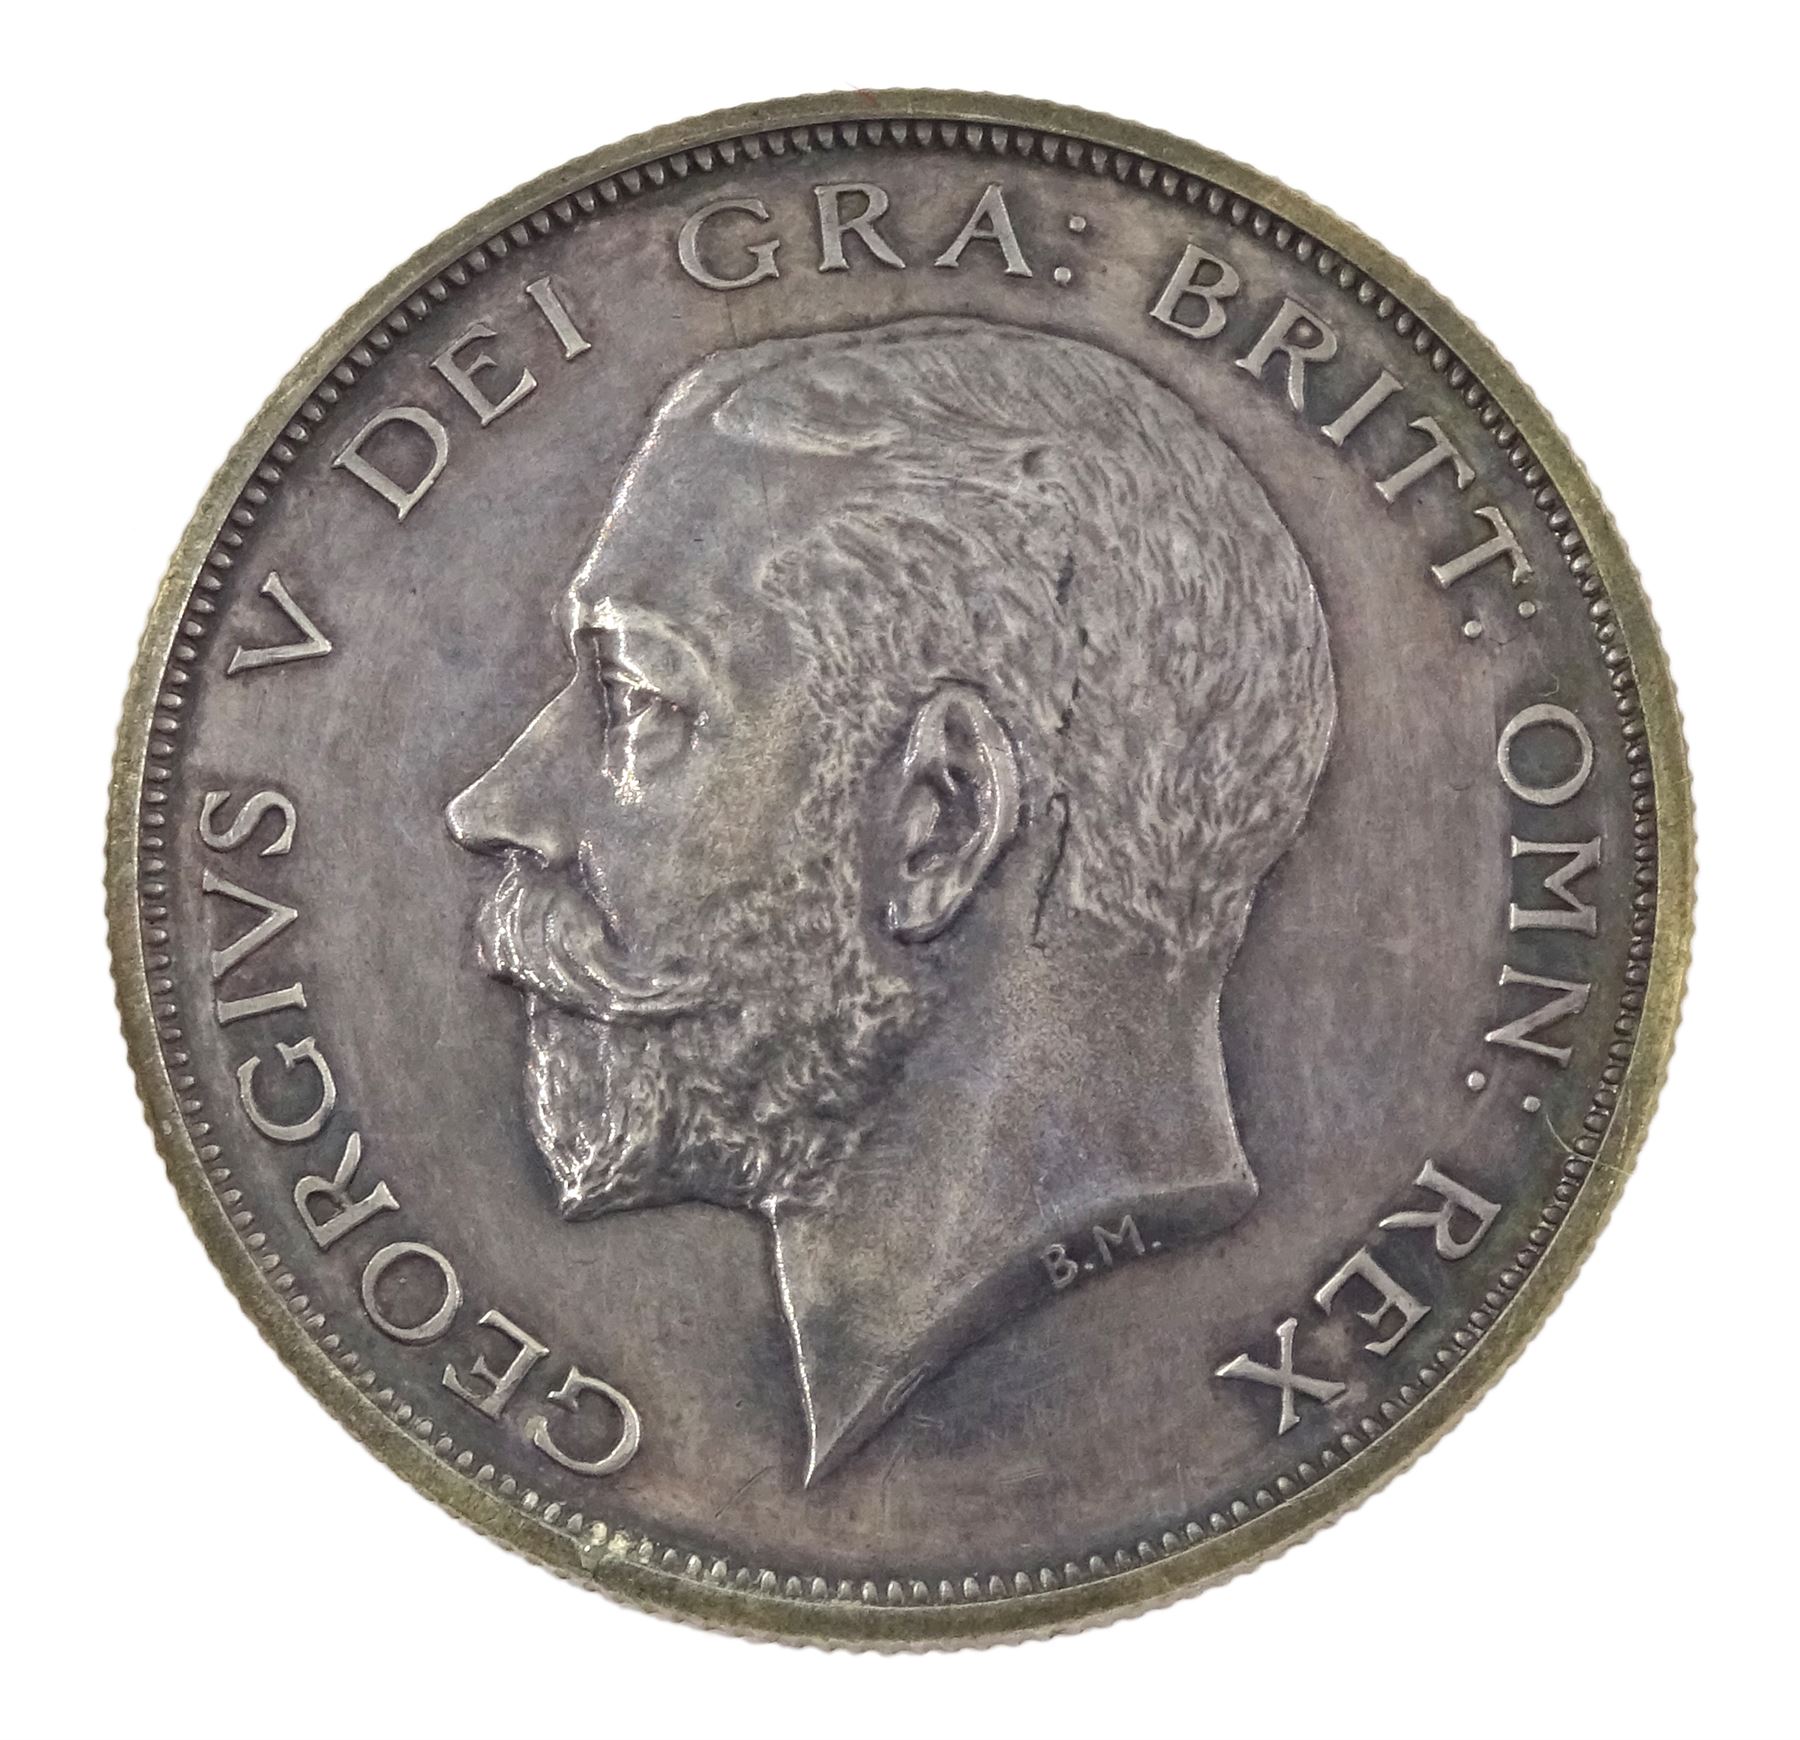 King George V 1911 proof short coin set - Image 14 of 24